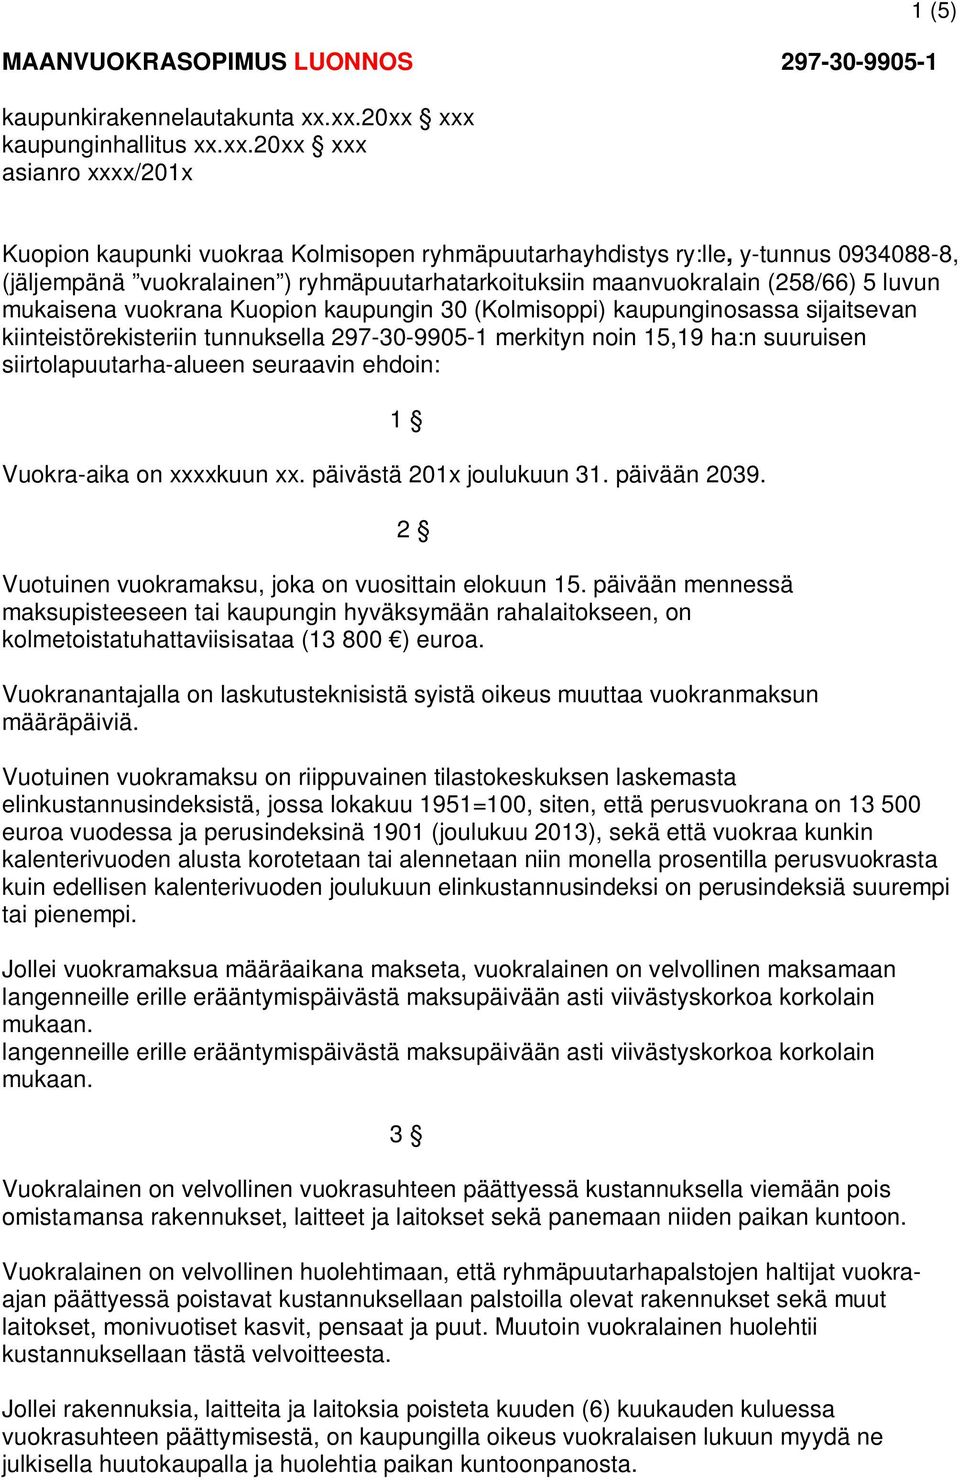 ryhmäpuutarhatarkoituksiin maanvuokralain (258/66) 5 luvun mukaisena vuokrana Kuopion kaupungin 30 (Kolmisoppi) kaupunginosassa sijaitsevan kiinteistörekisteriin tunnuksella 297-30-9905-1 merkityn